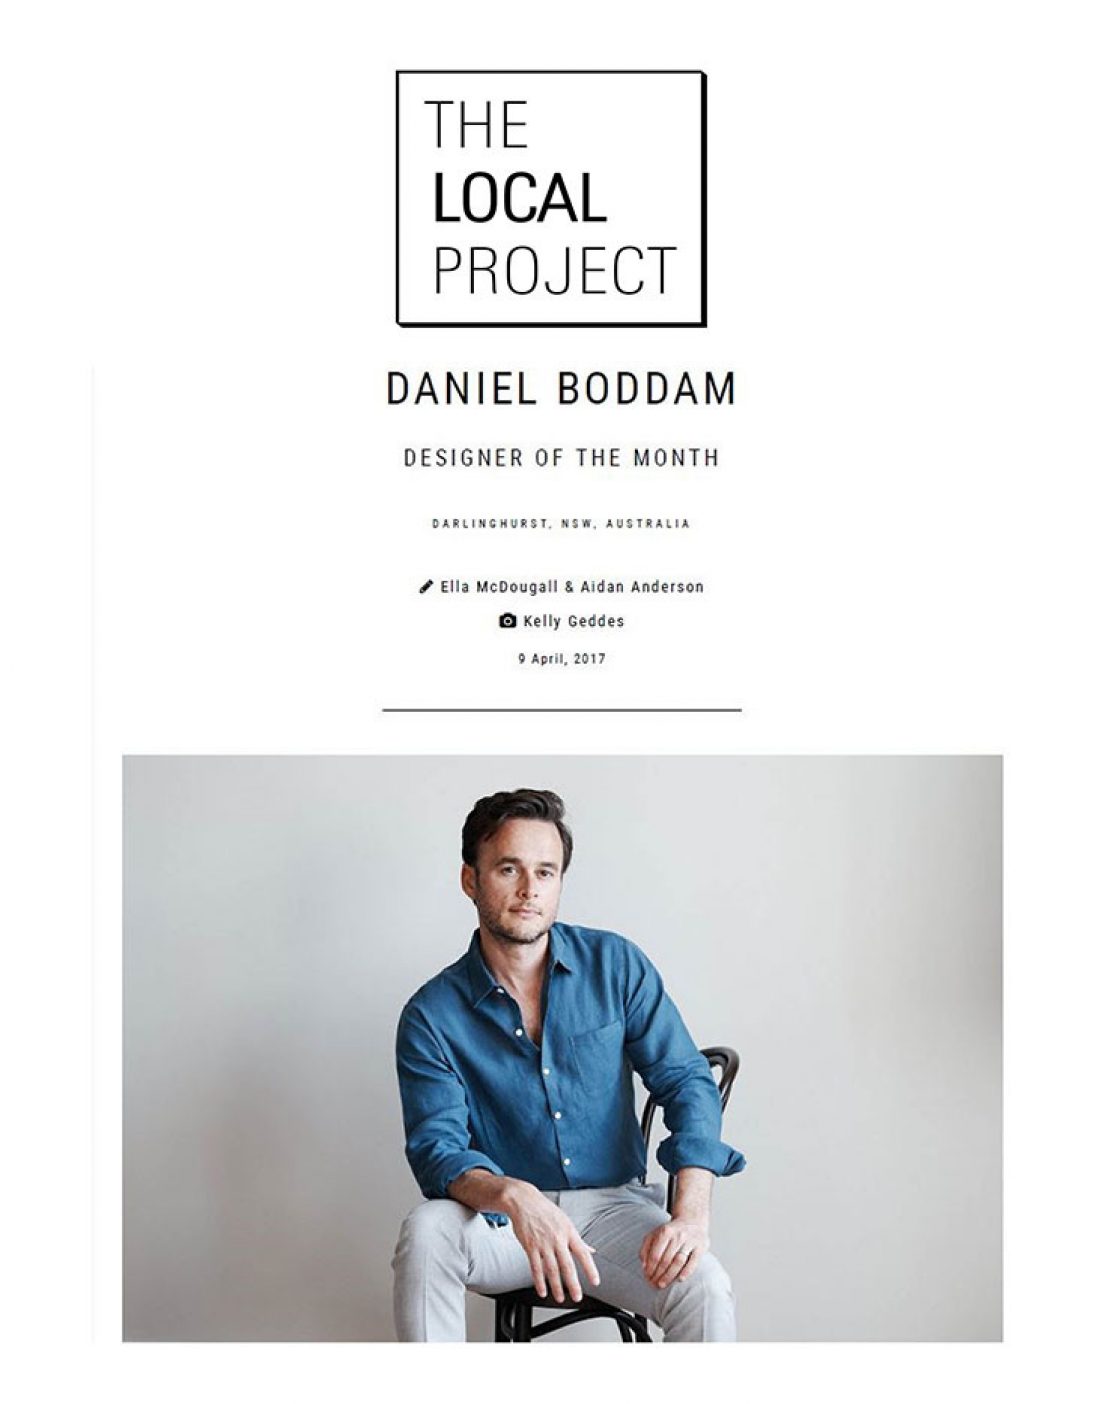 The Local Project - Daniel Boddam